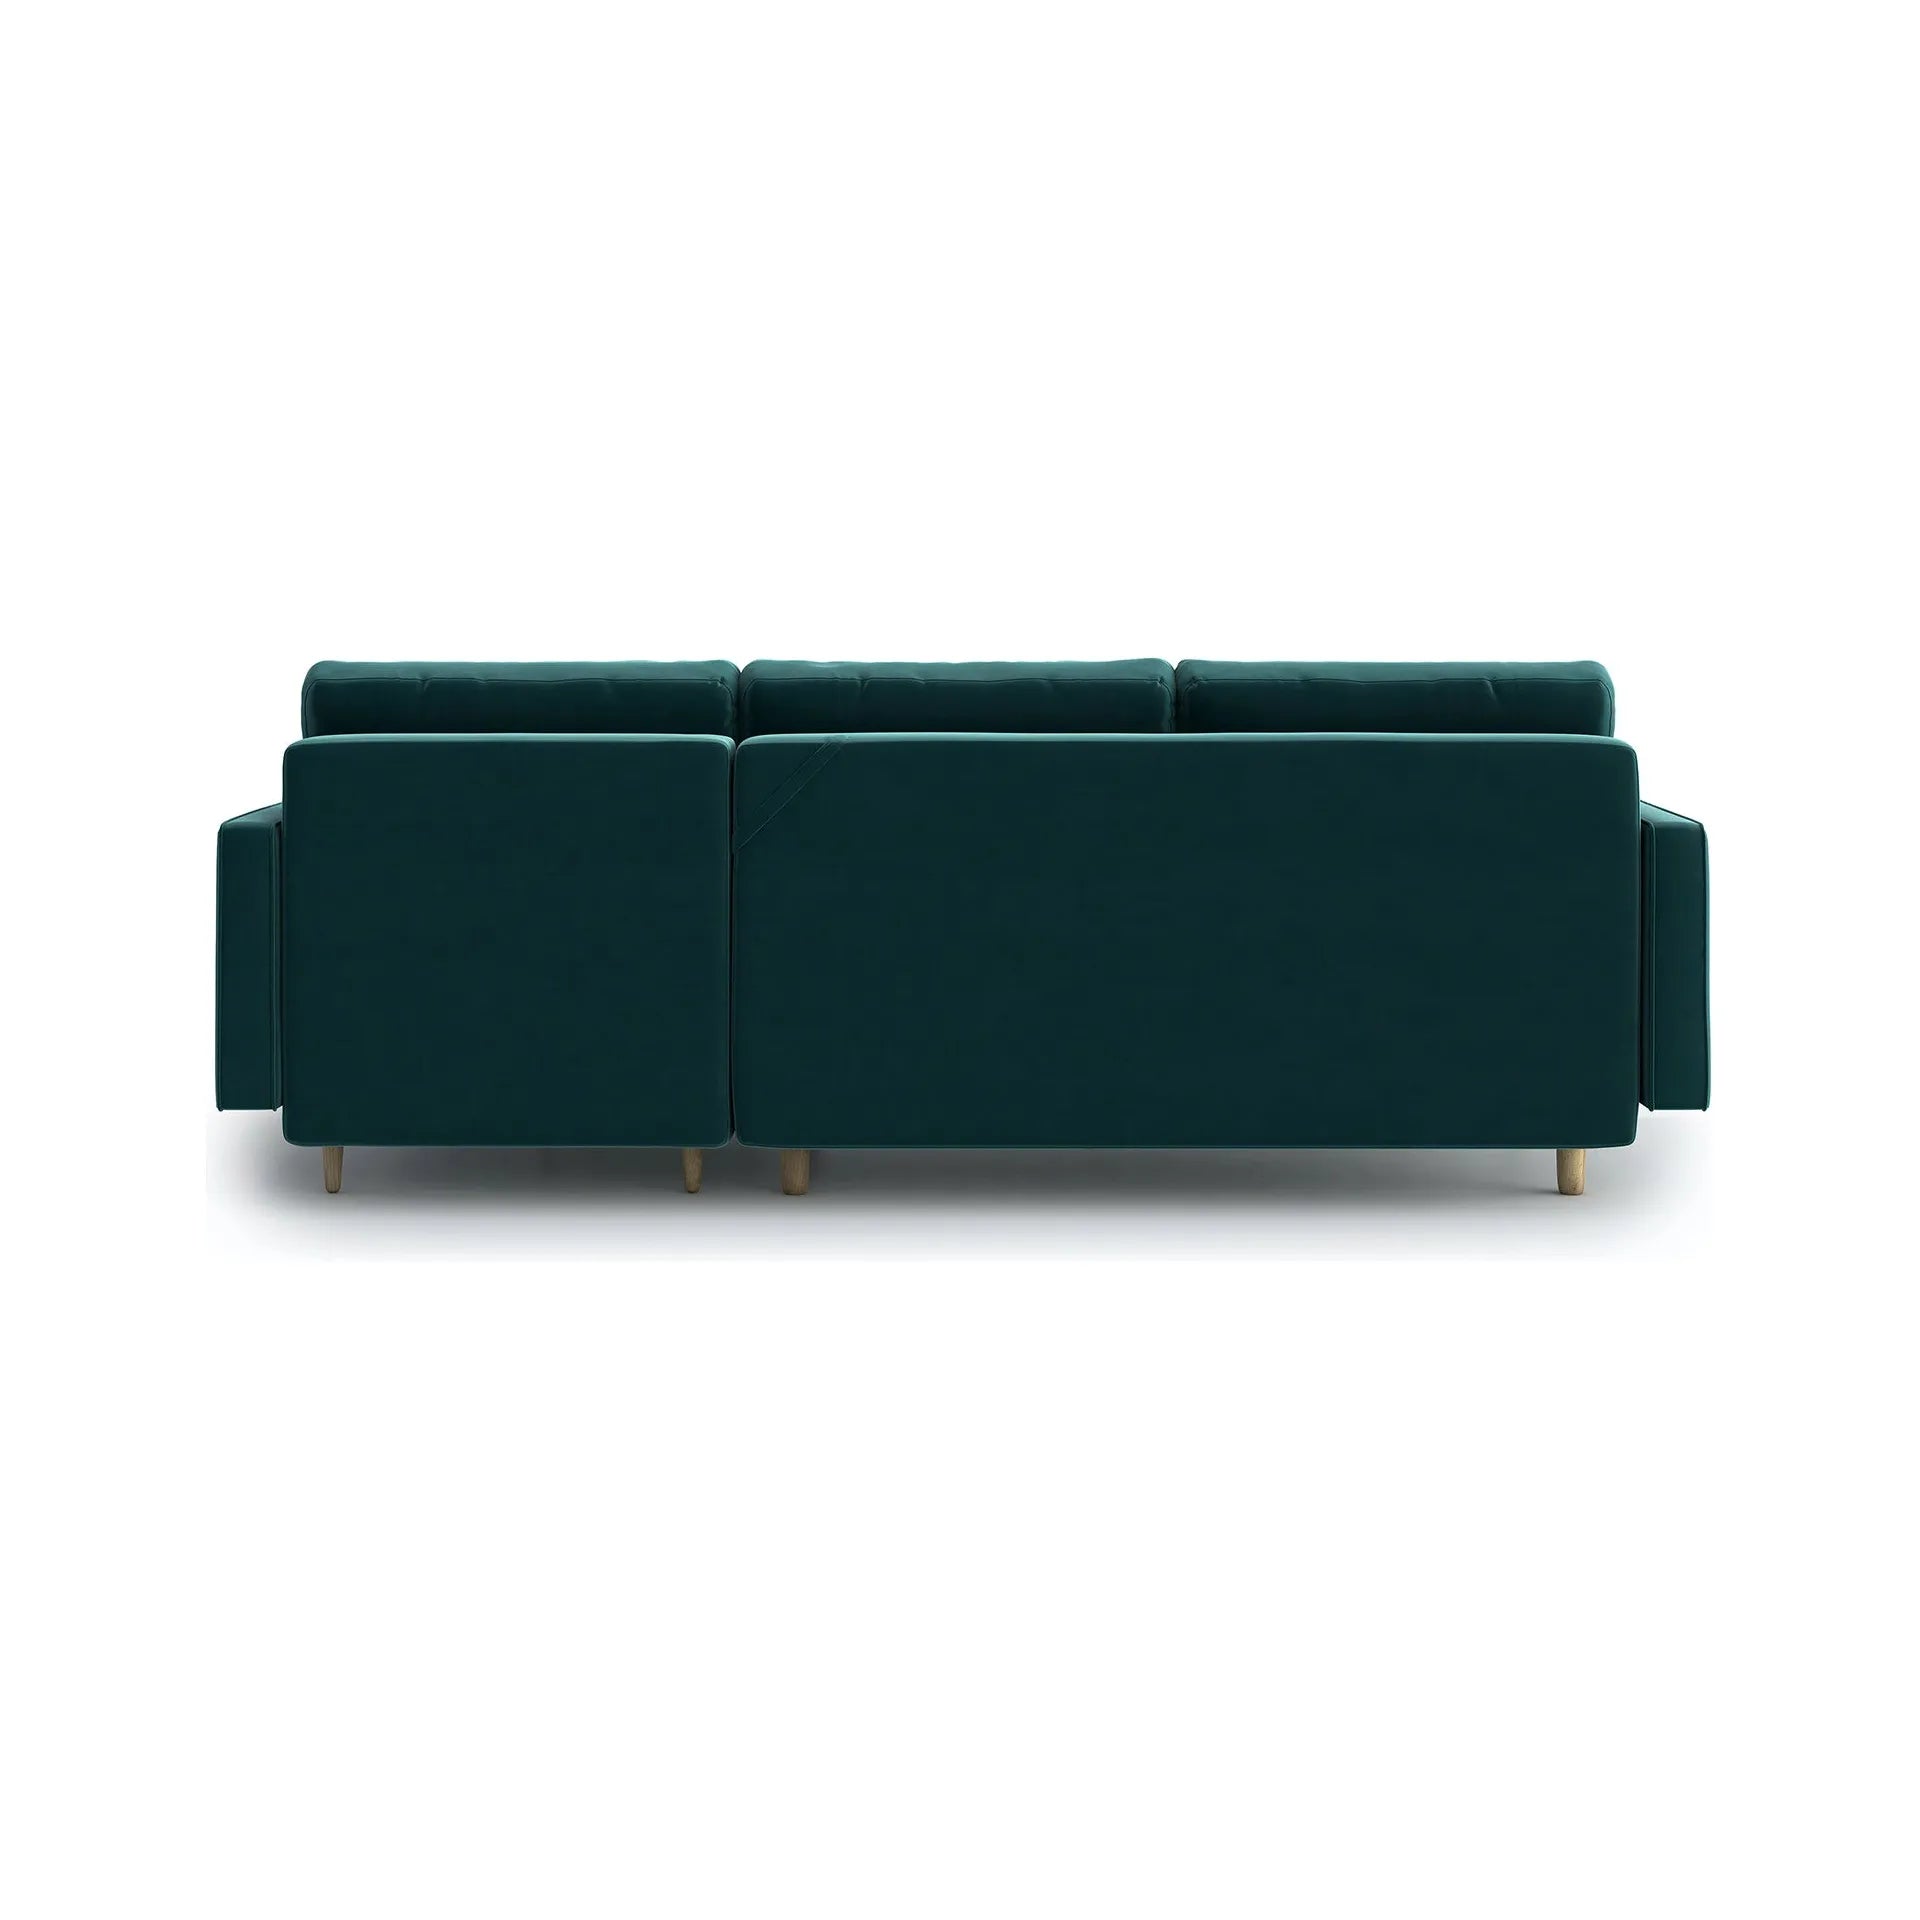 ESME dygsniuota kampinė sofa lova, žalia spalva, universali kampinė pusė